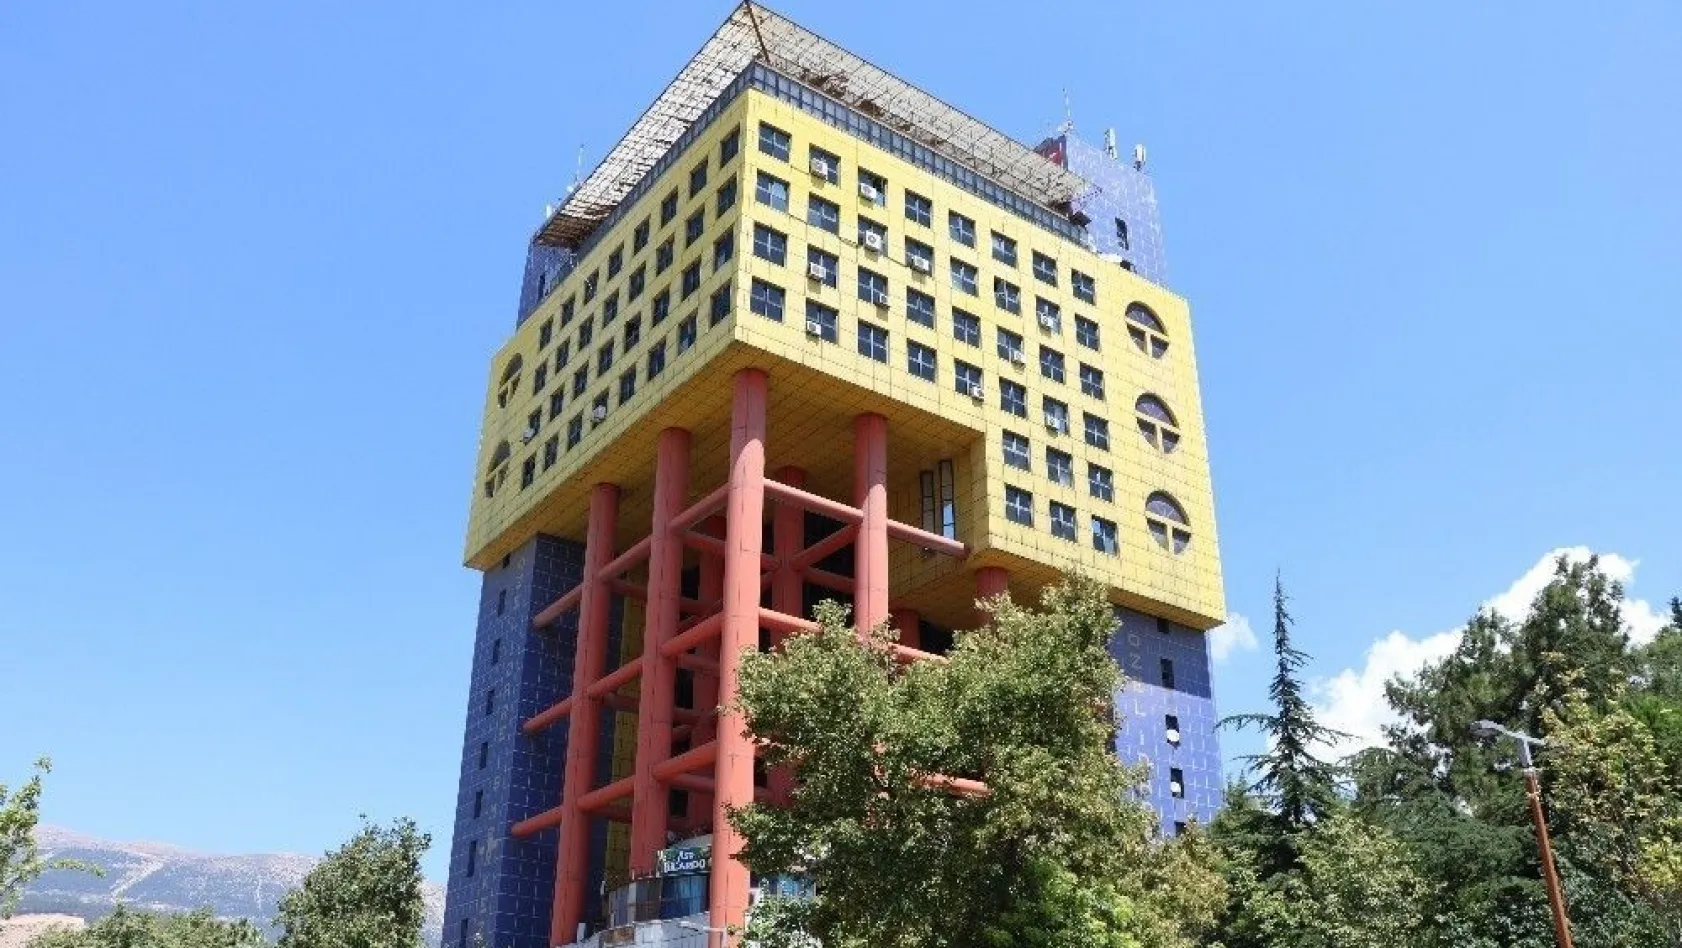 'Dünyanın en saçma binası' Kahramanmaraş'ta
